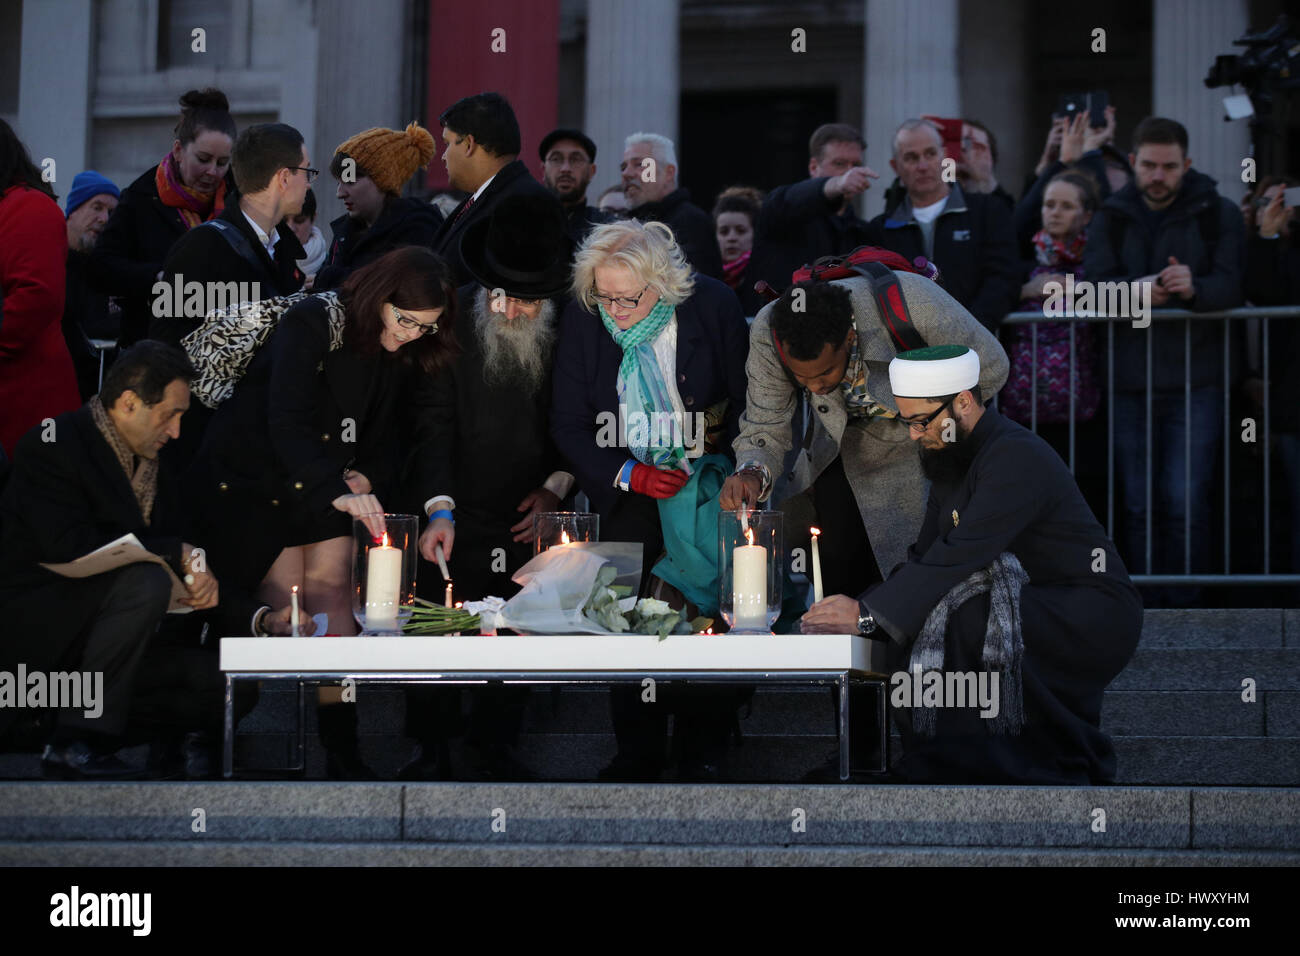 Les membres du public à la lumière des bougies veillée aux chandelles à Trafalgar Square, Londres, en souvenir de ceux qui ont perdu leur vie dans l'attaque terroriste de Westminster. Banque D'Images